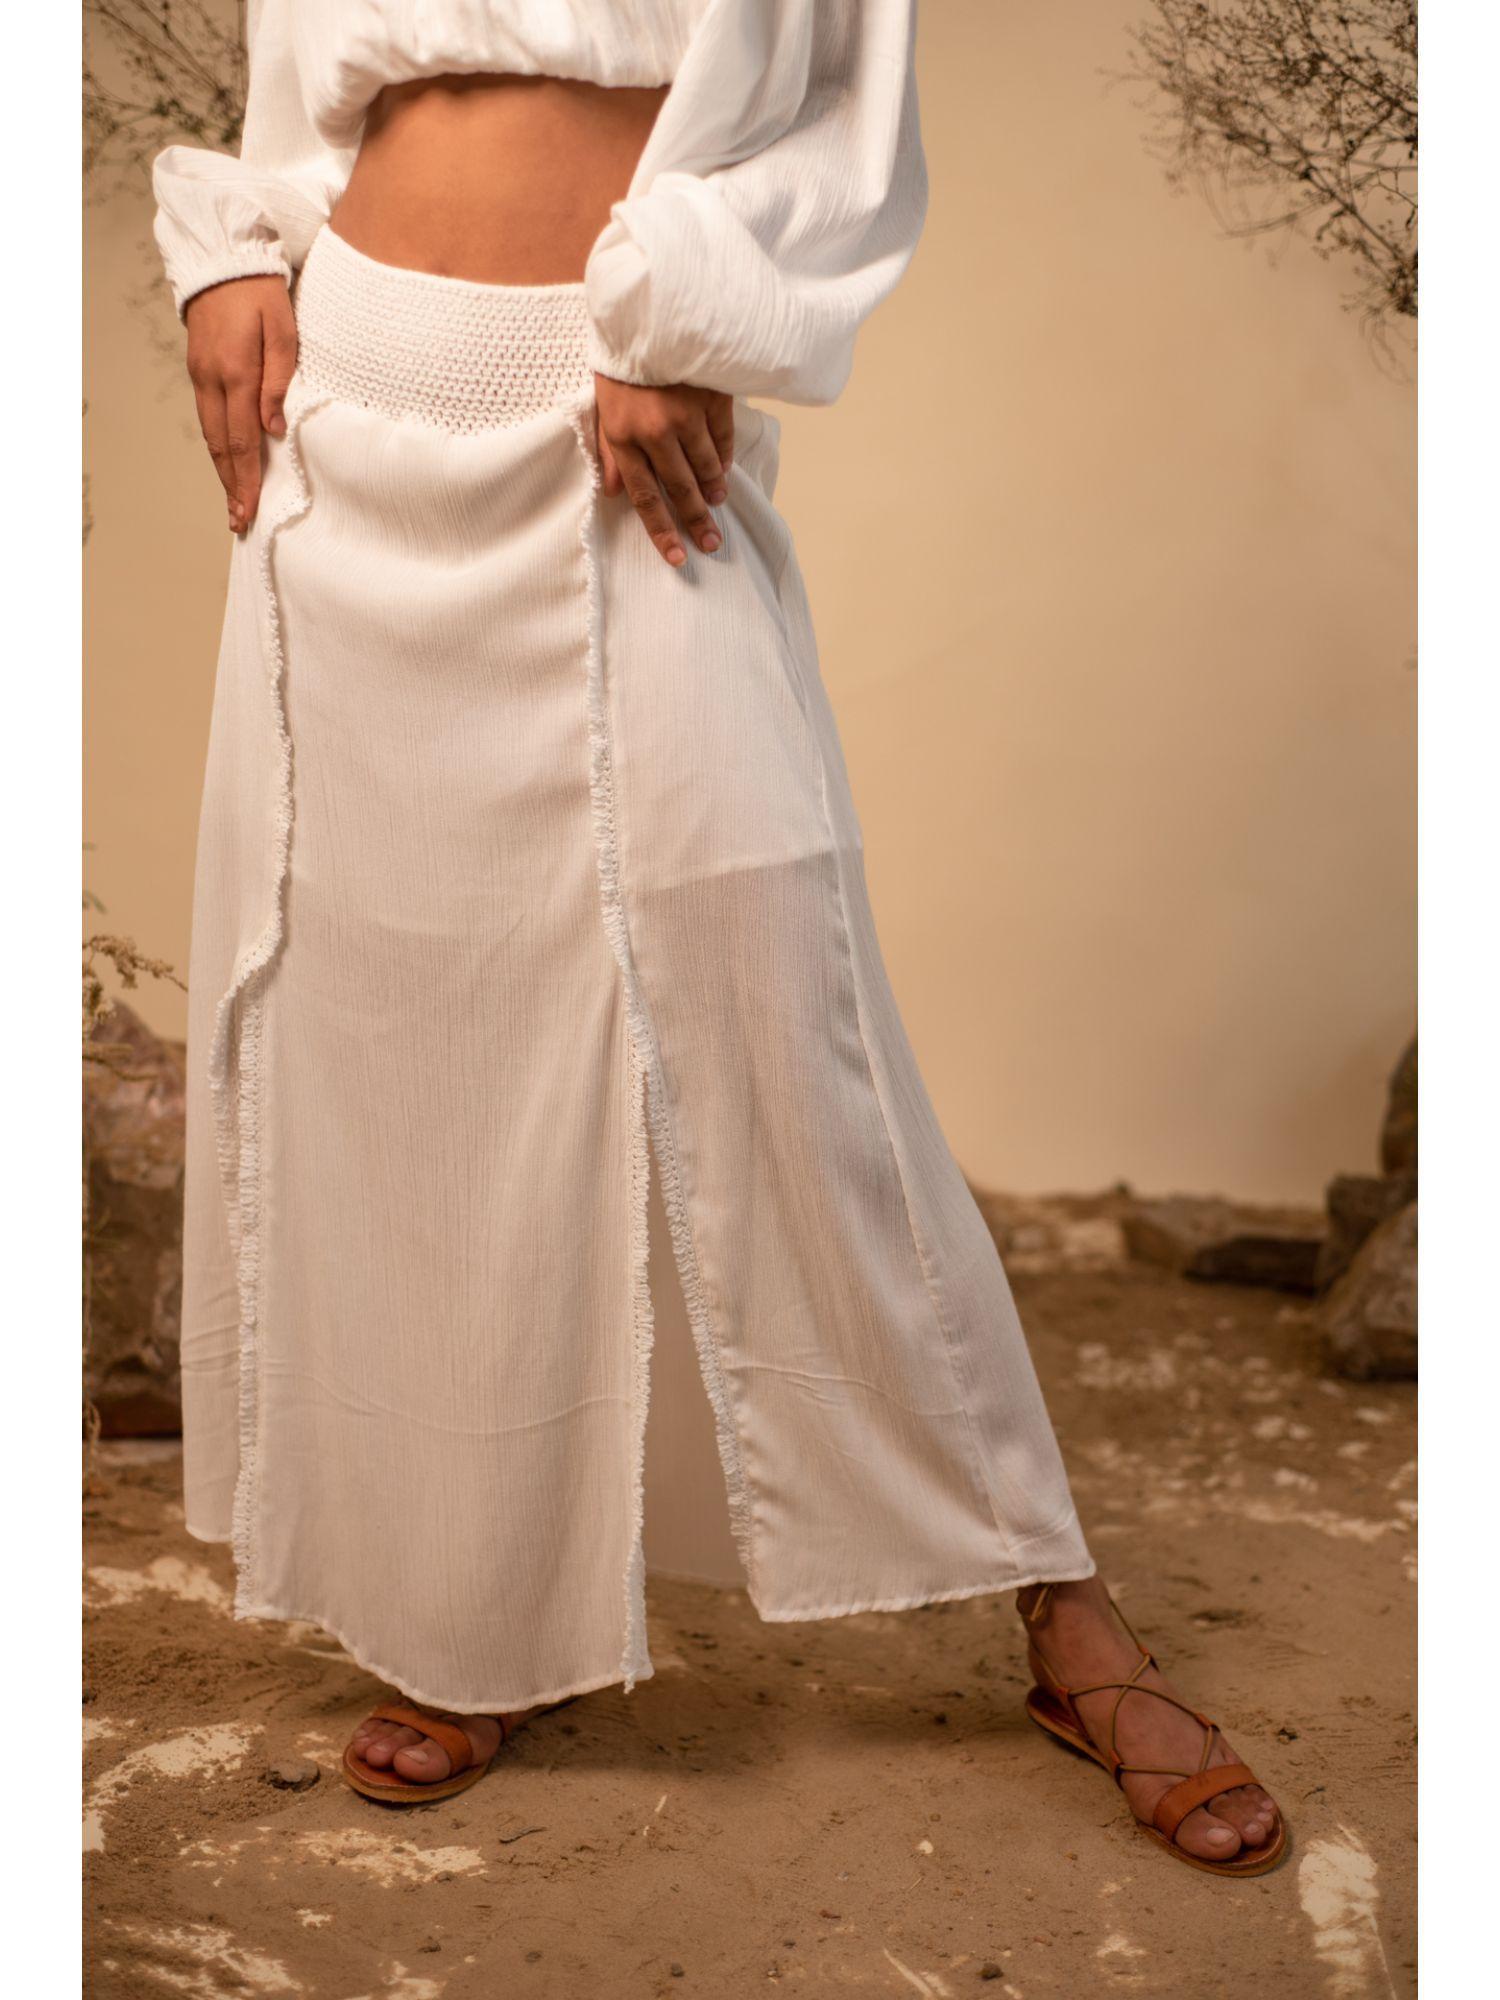 white skirt with slits